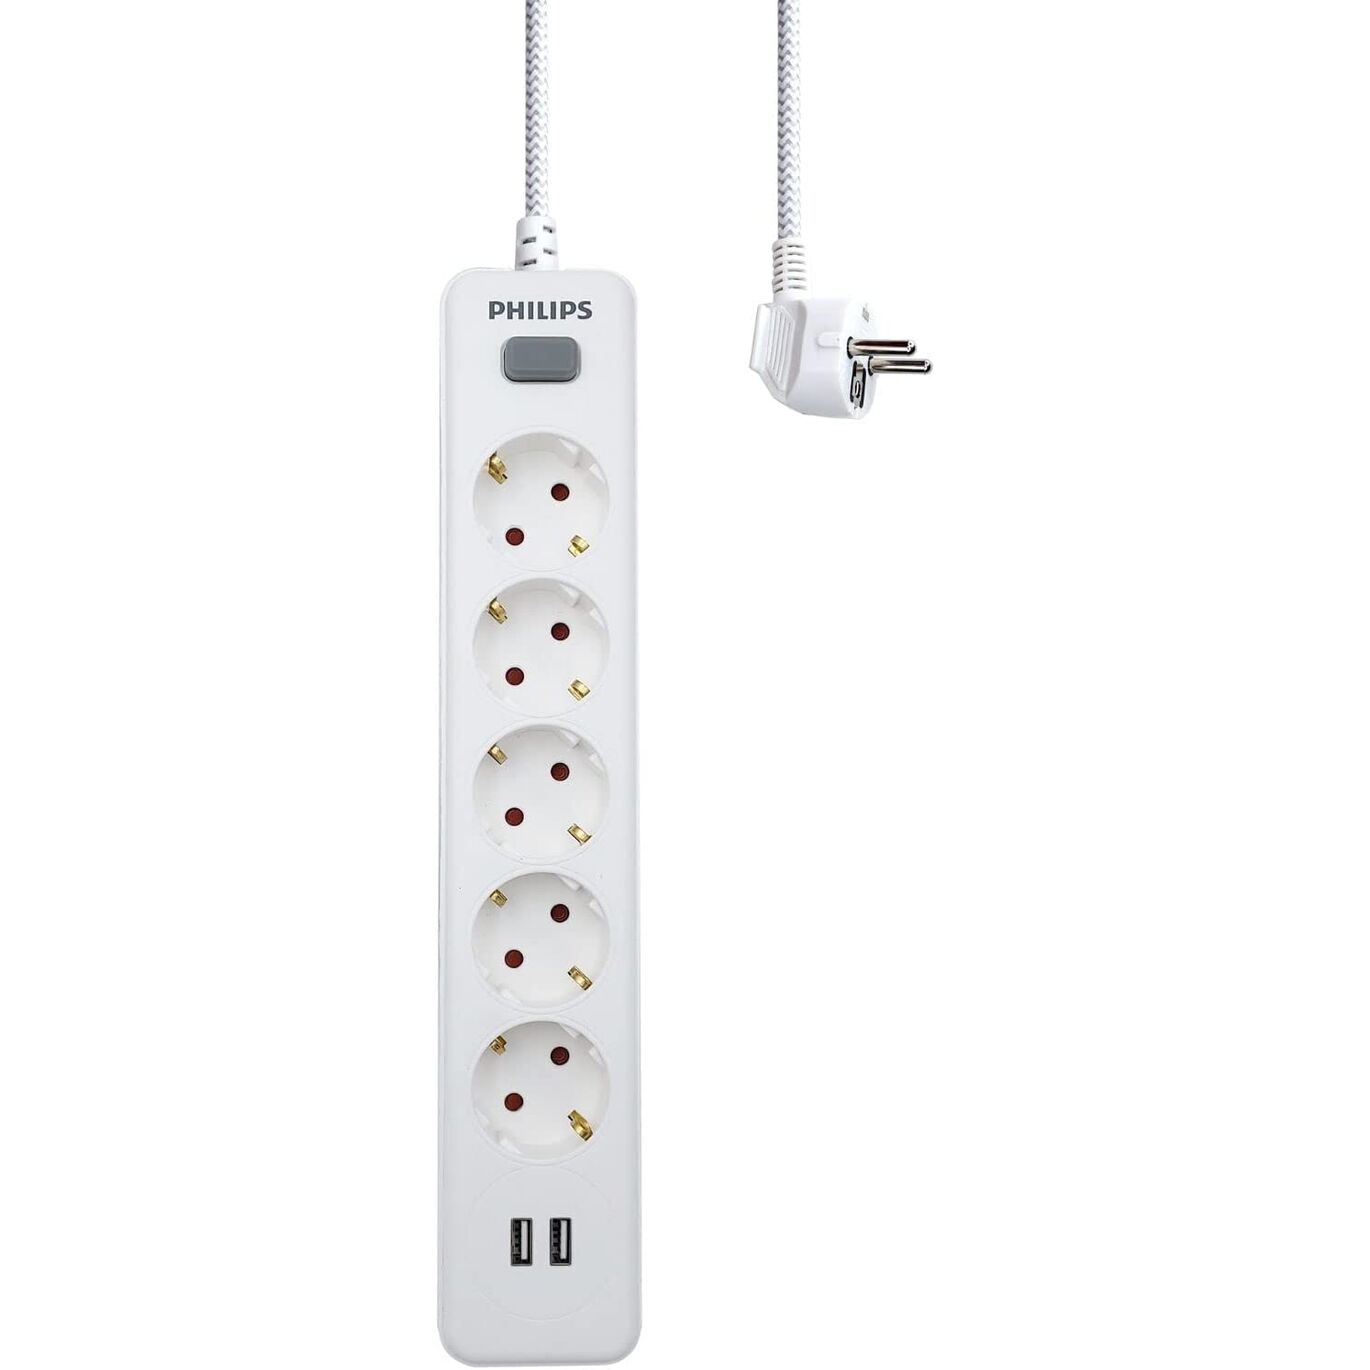 Regleta de 5 Enchufes Schuko y 2 Puertos USB de 2,4A, Interruptor  Encendido/Apagado, Cable de Alimentación Trenzado 1,5 Metros - Color Blanco  Philips